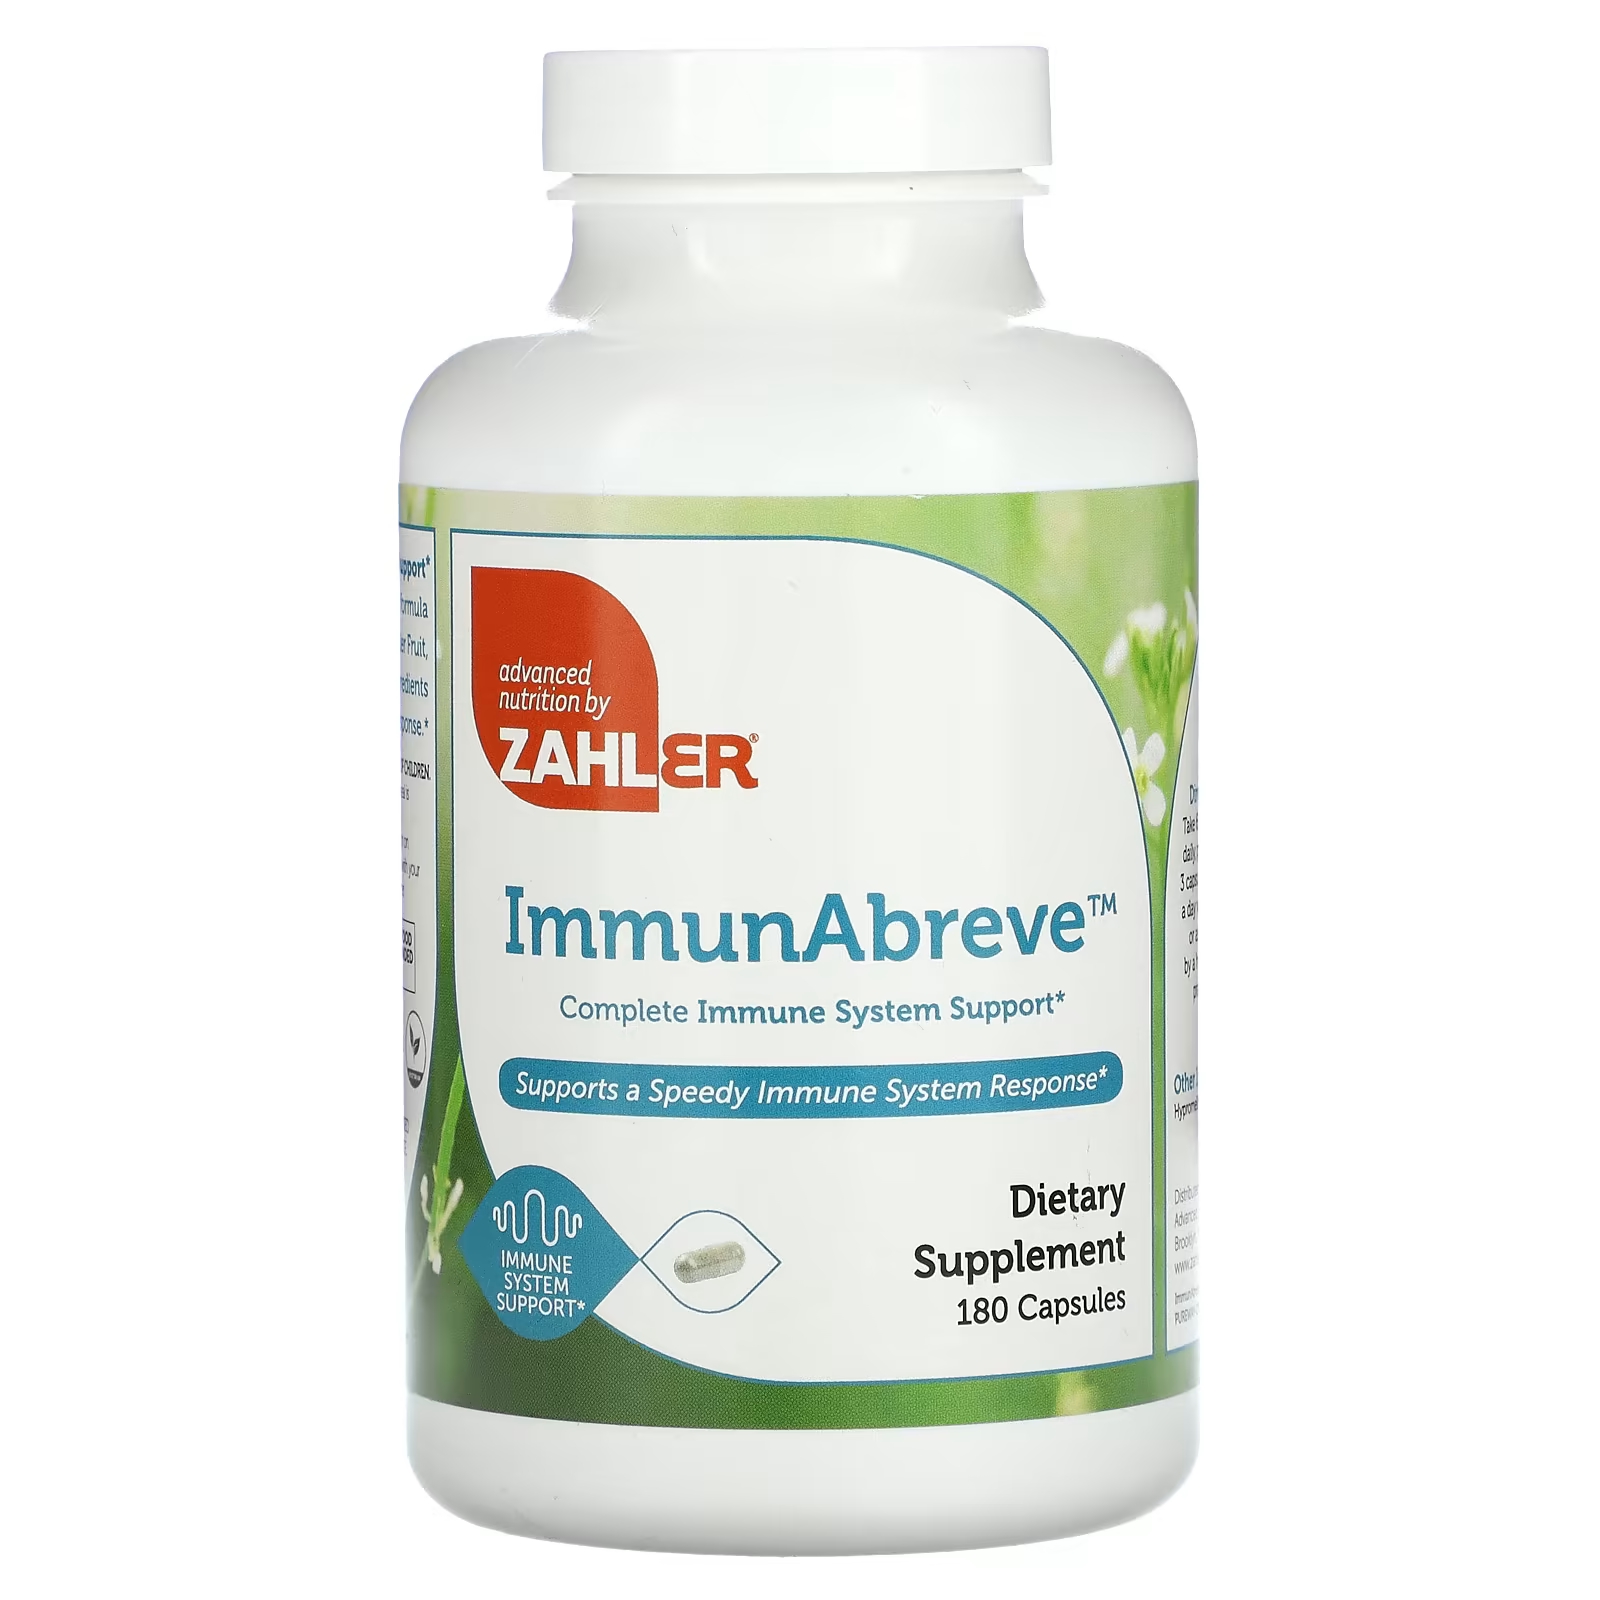 цена Пищевая добавка Zahler ImmunAbreve полная поддержка иммунной системы, 180 капсул